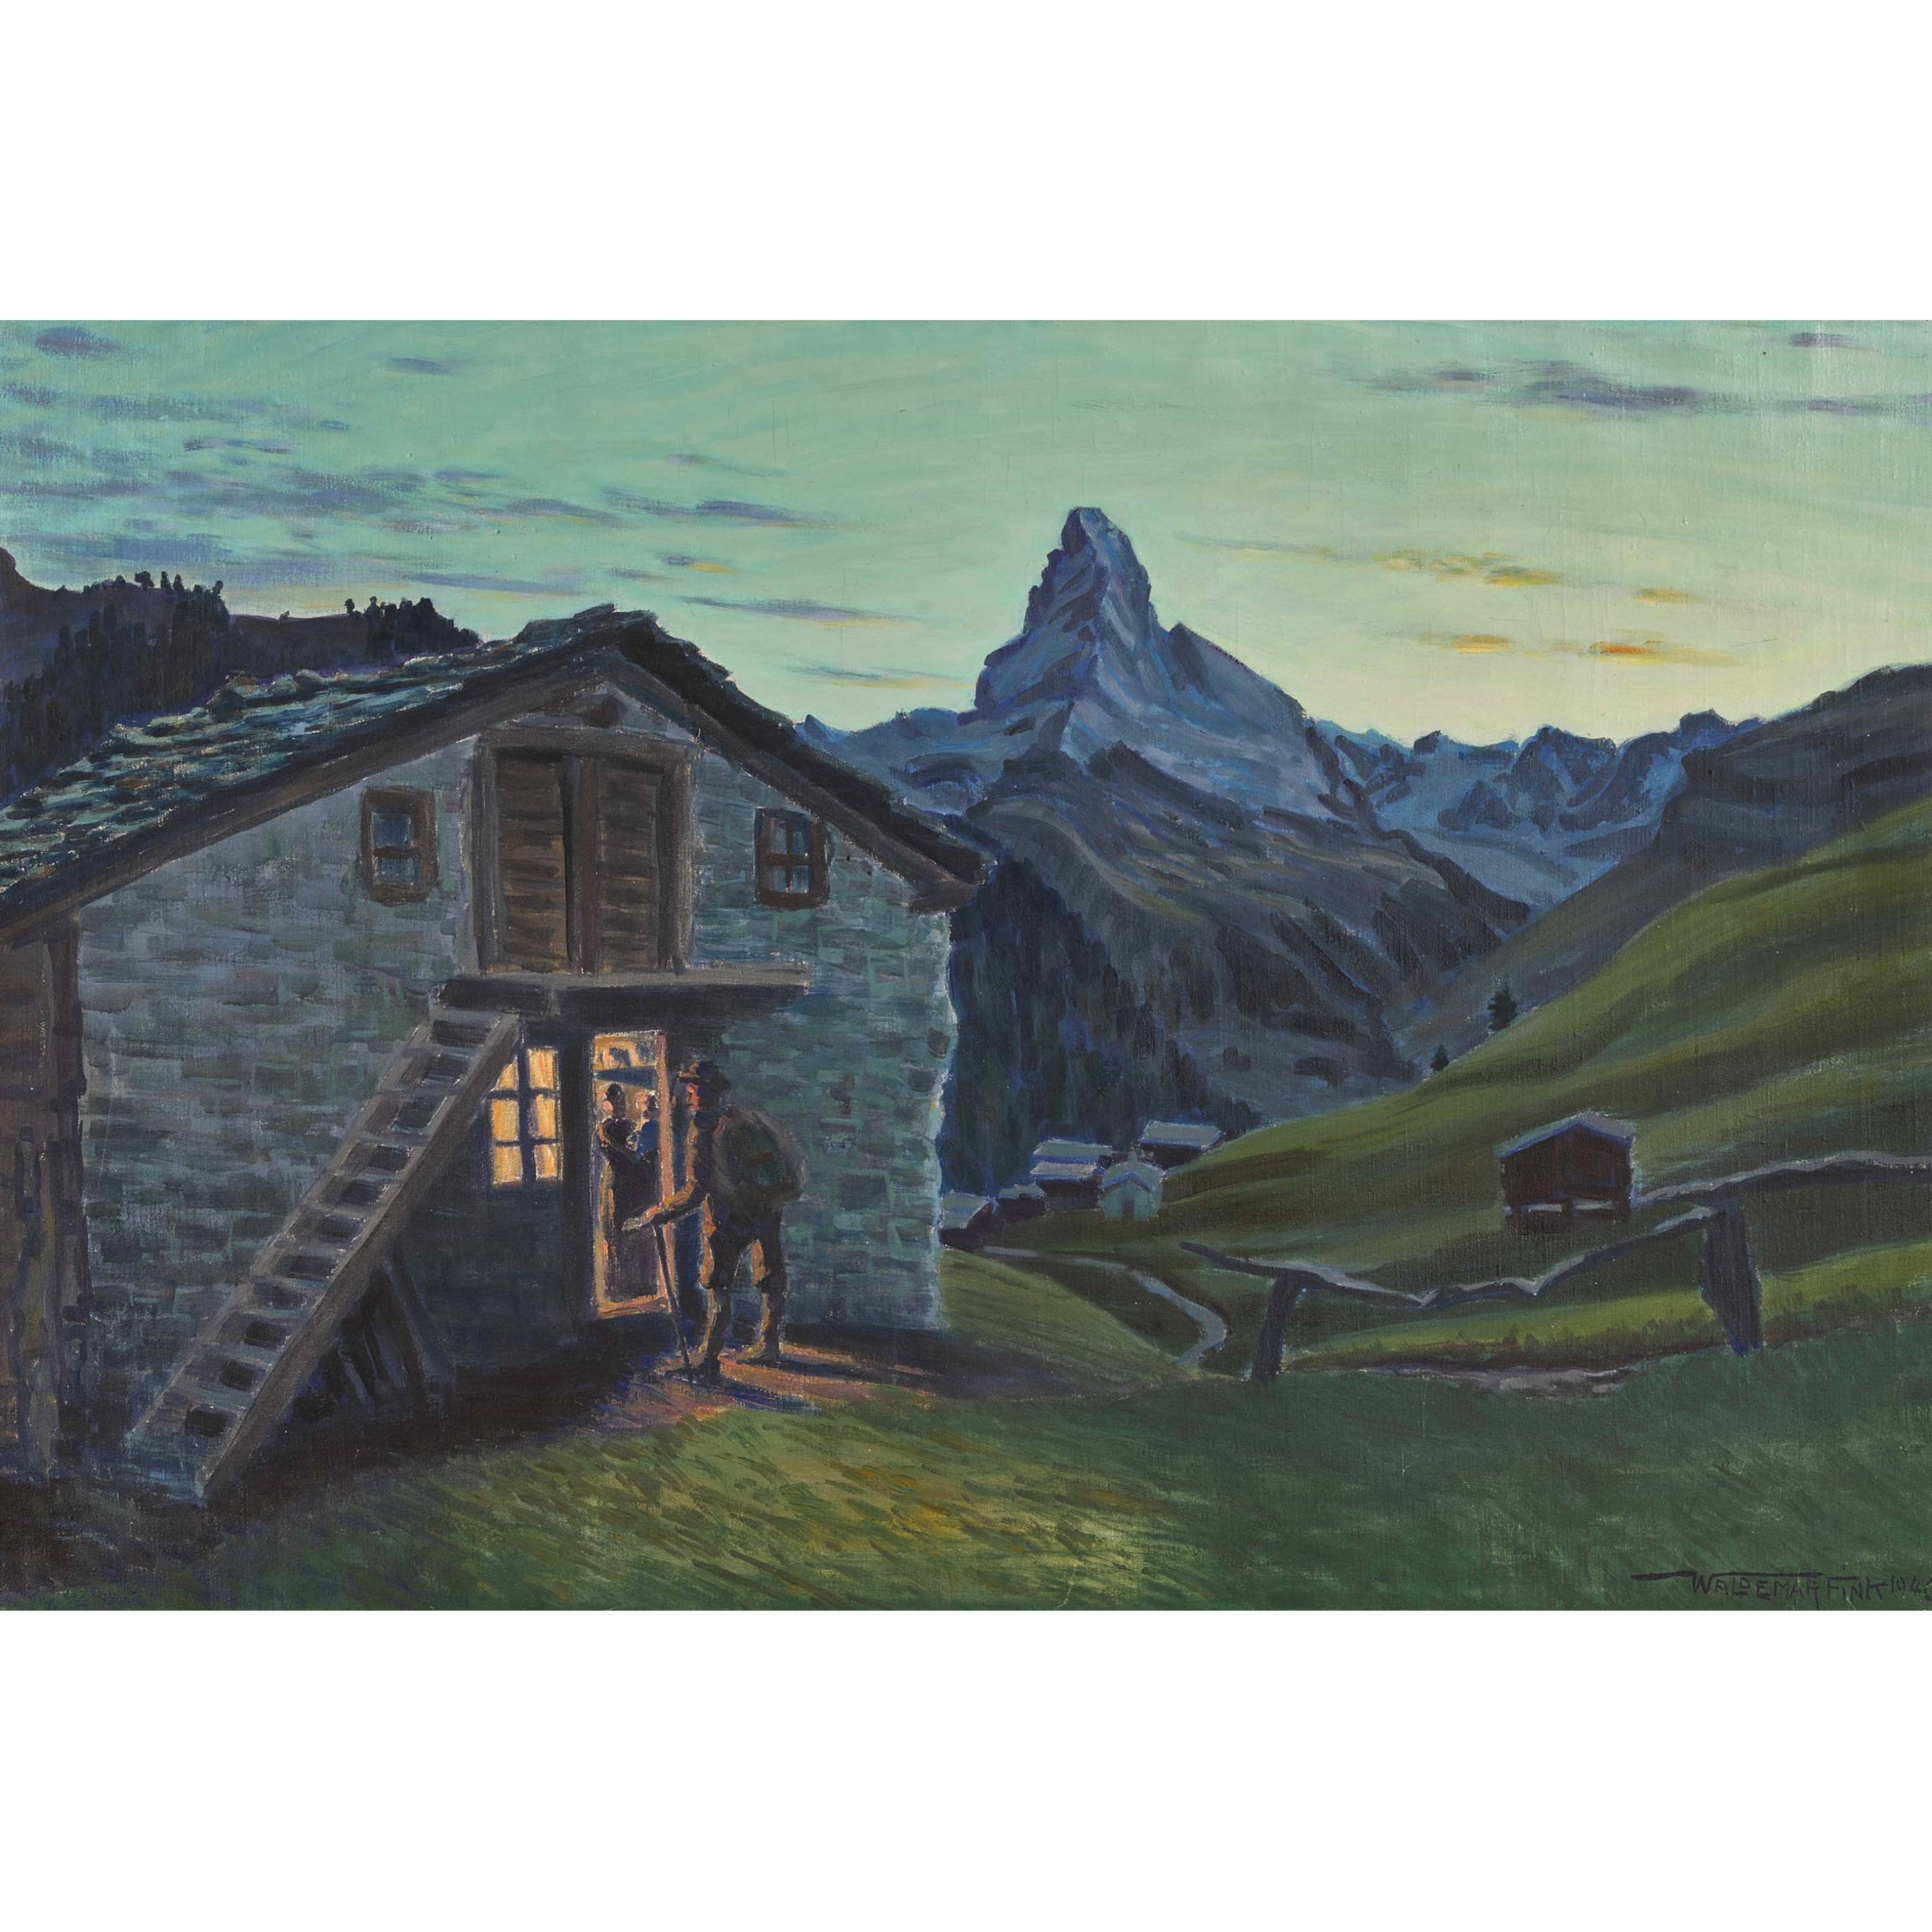 "Abenddämmern in Findelen mit Matterhorn". by Waldemar Fink, 1946